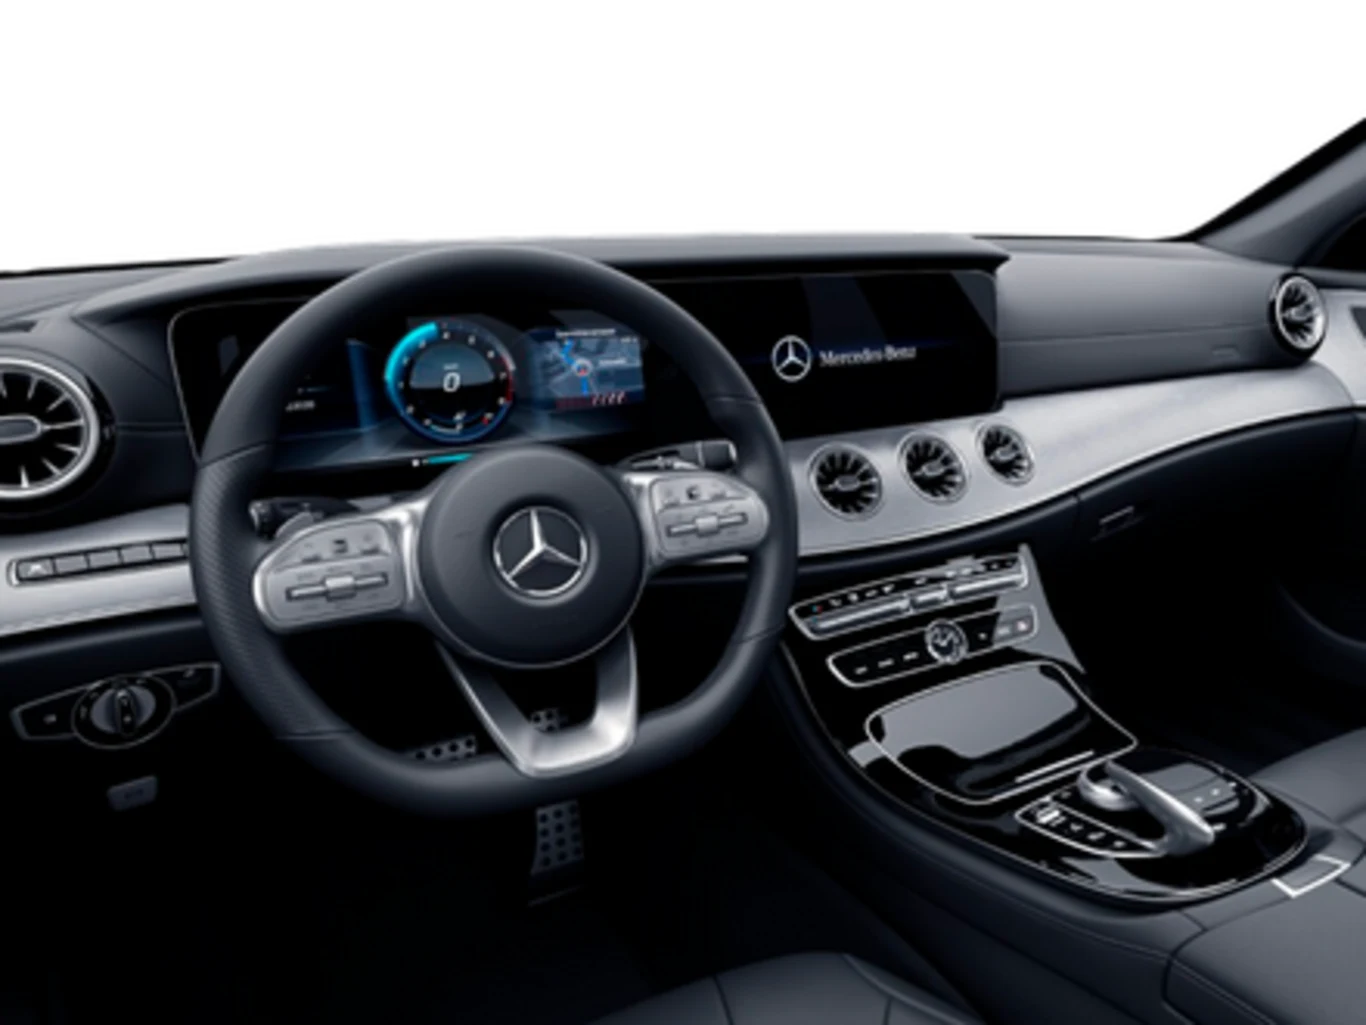 Mercedes-Benz CLS 450 3.0 TB 4MATIC SPORT (Híbrido)